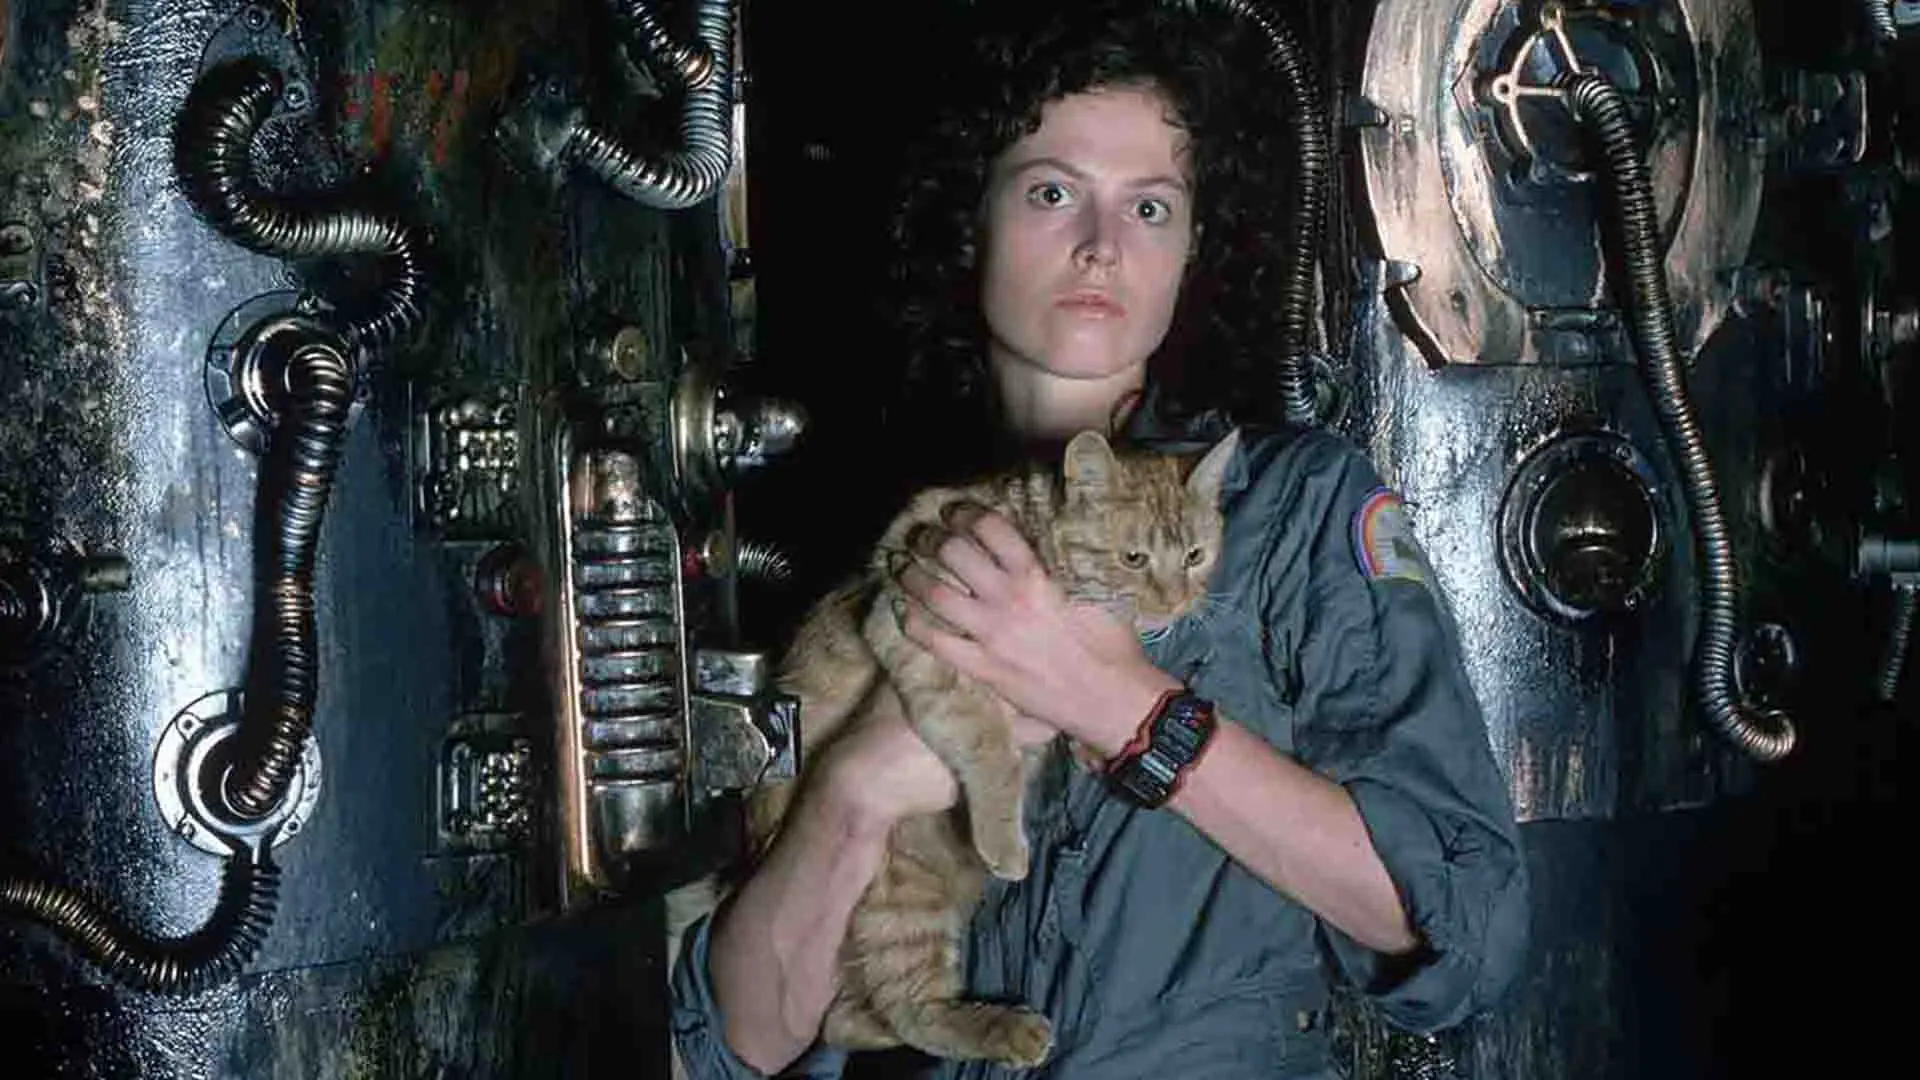 سیگورنی ویور به همراه یک گربه در سفینه فضایی در فیلم Alien